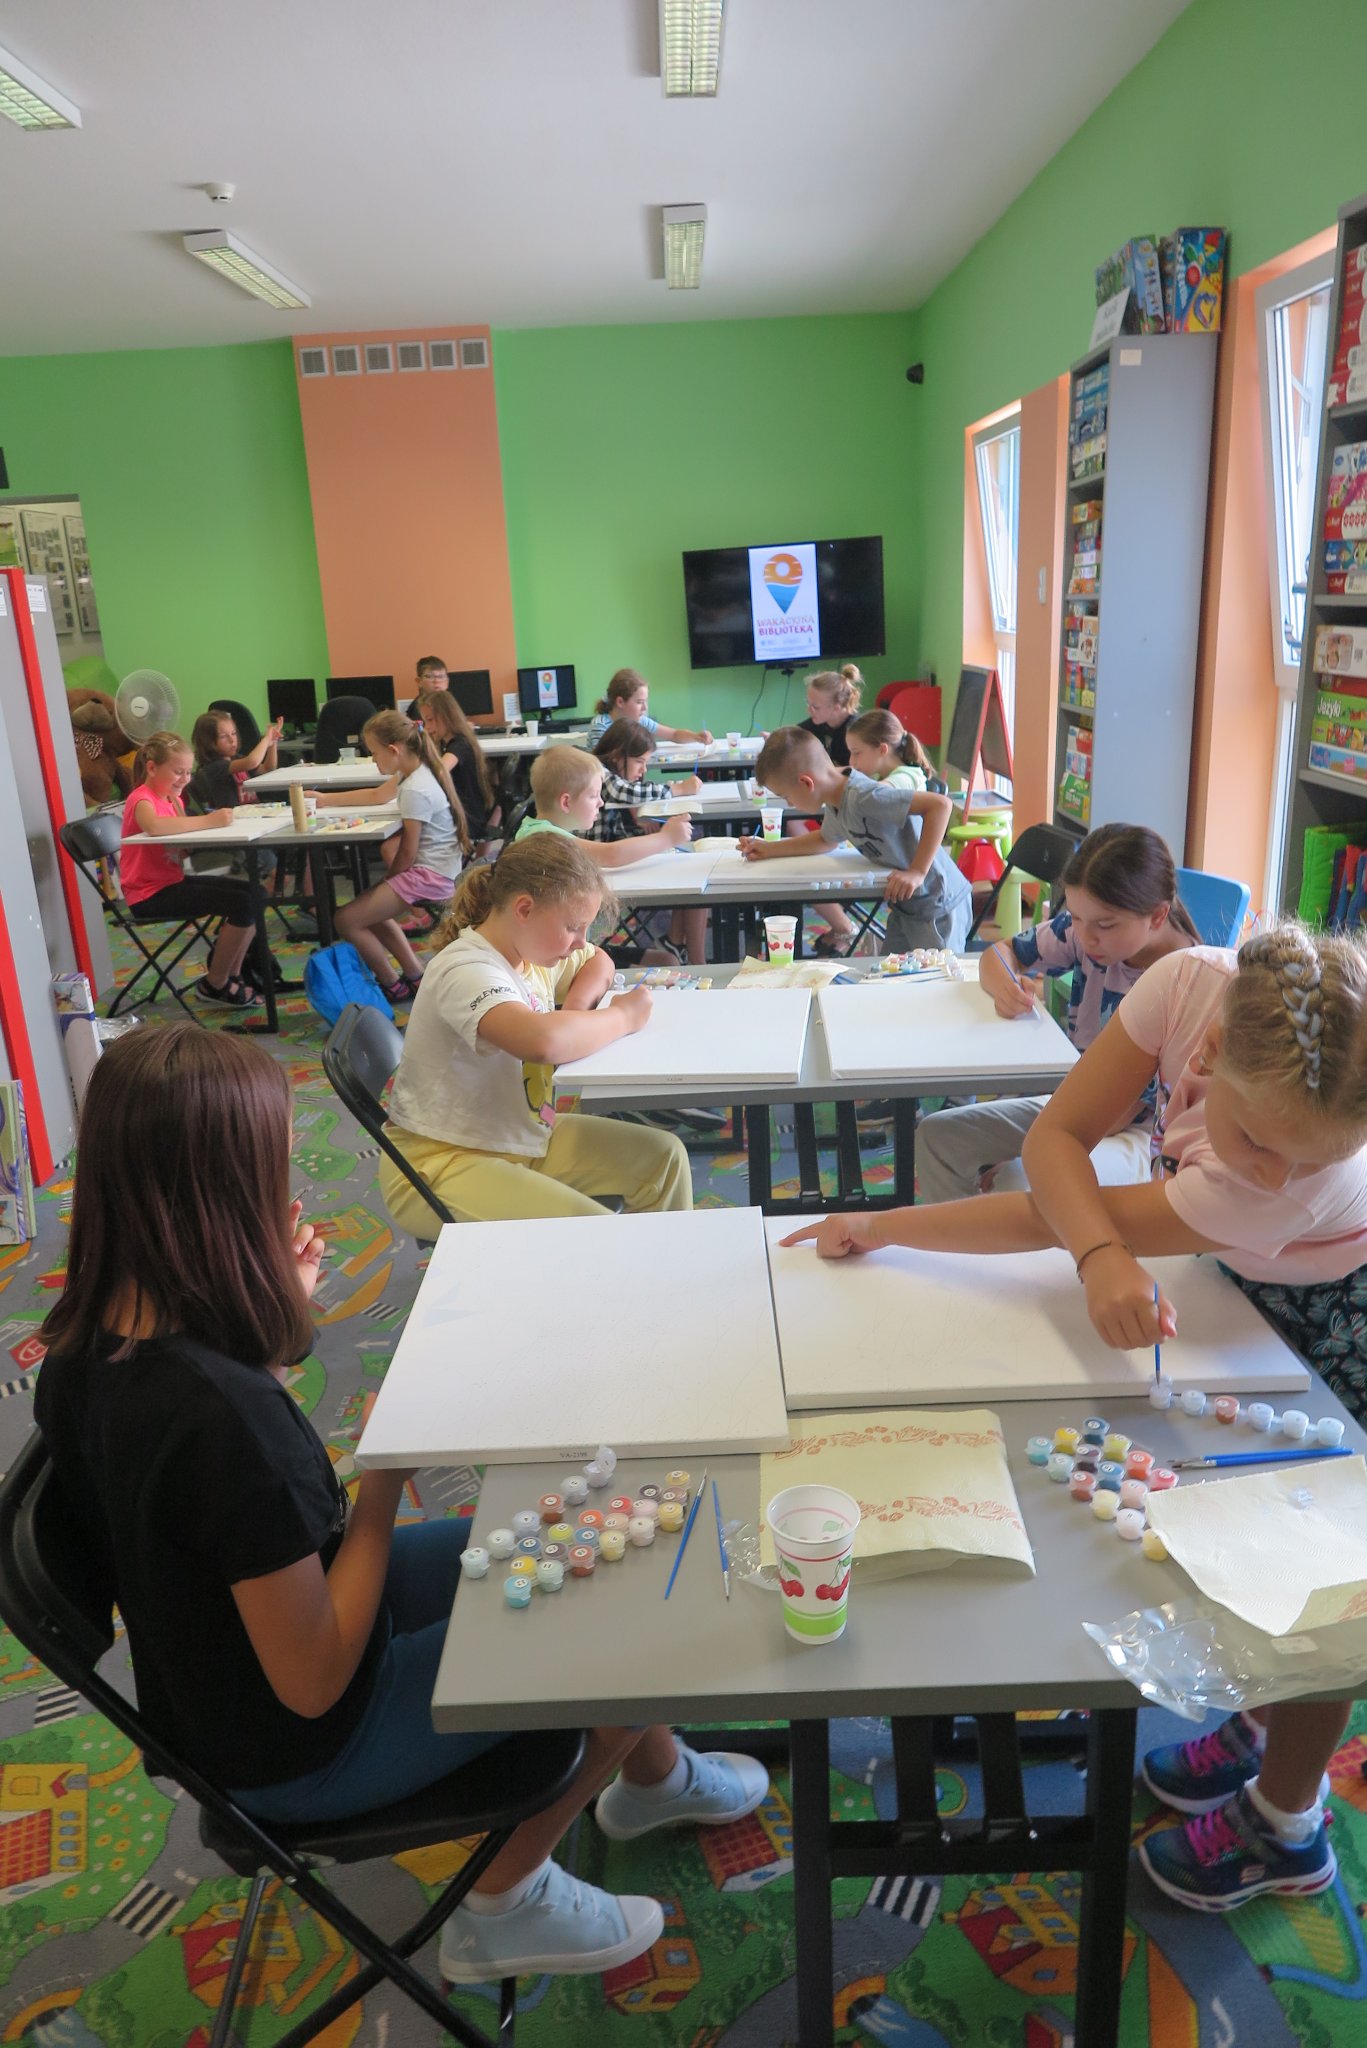 dzieci siedzą przy stolikach w oddziale dla dzieci, na stolikach leżą zestawy do malowania obrazów